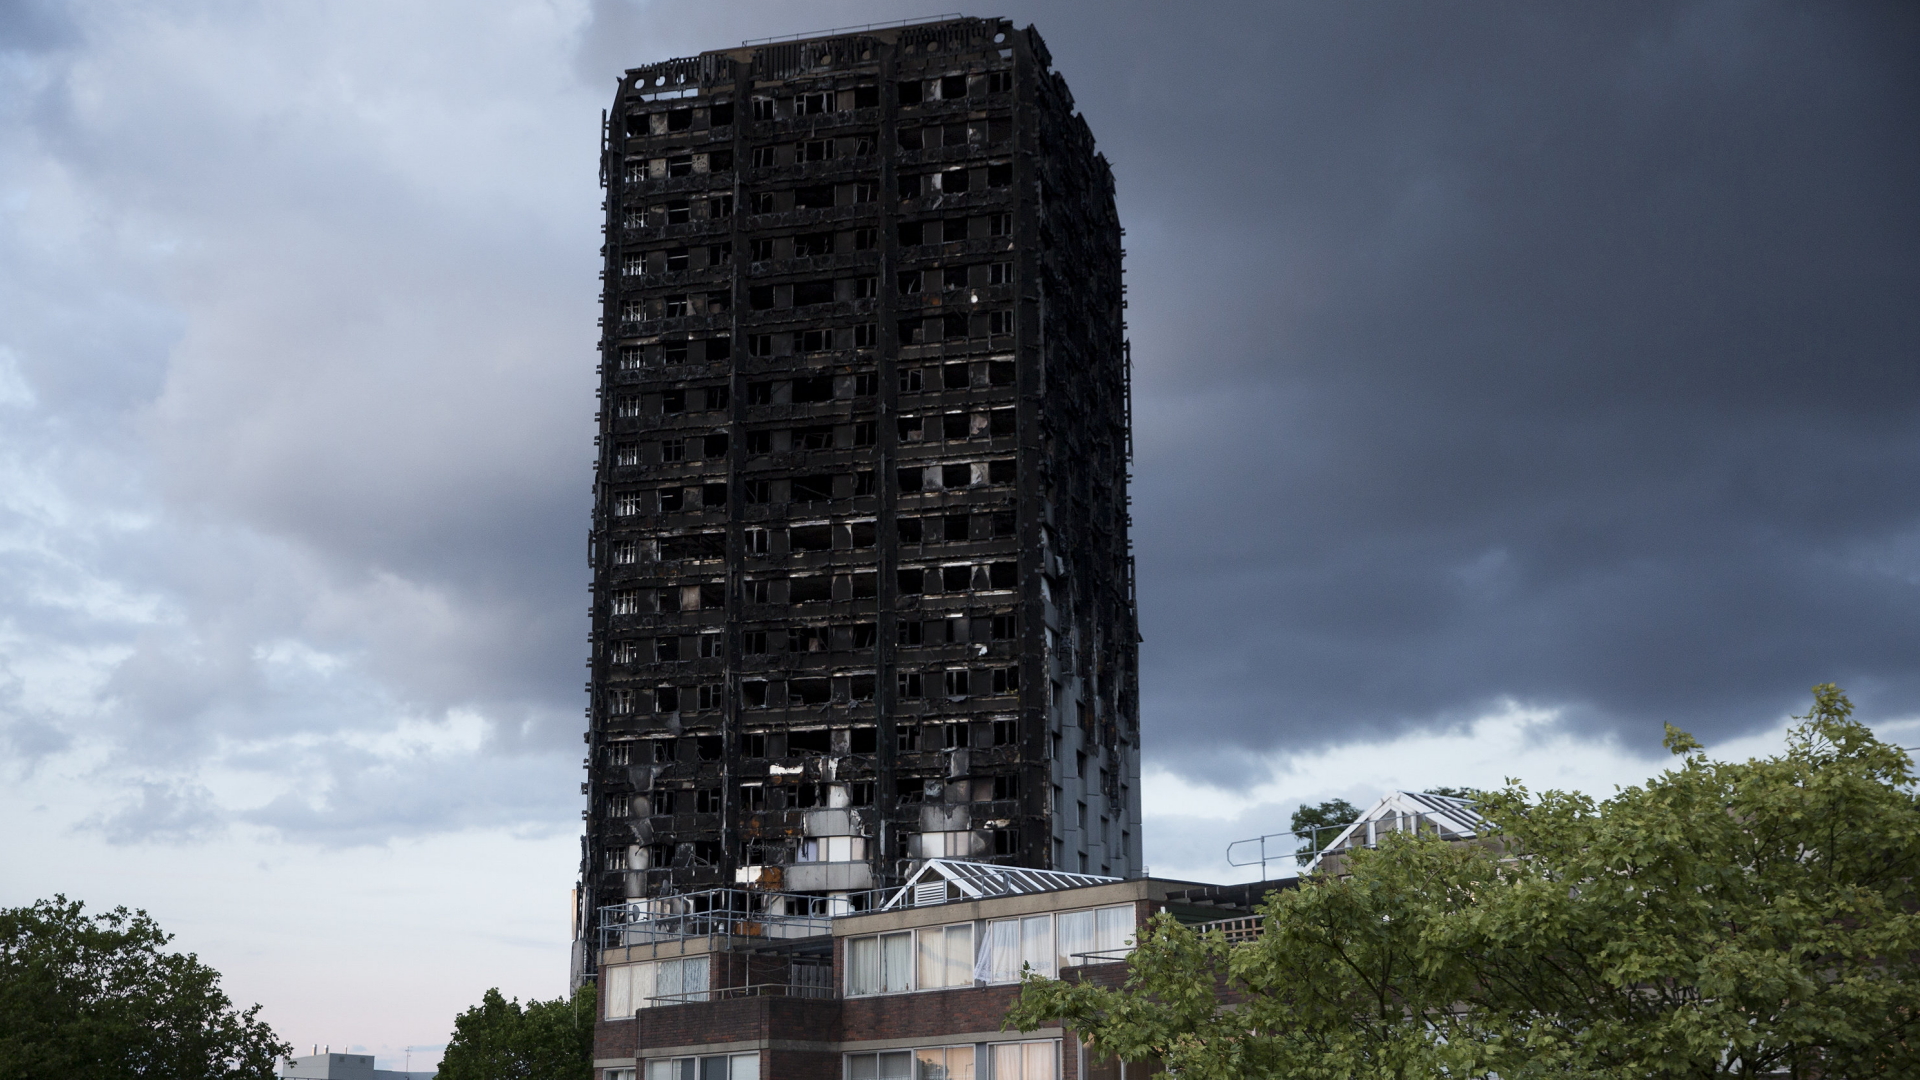 Das ausgebrannte Hochhaus Grenfell Tower in Londond | dpa